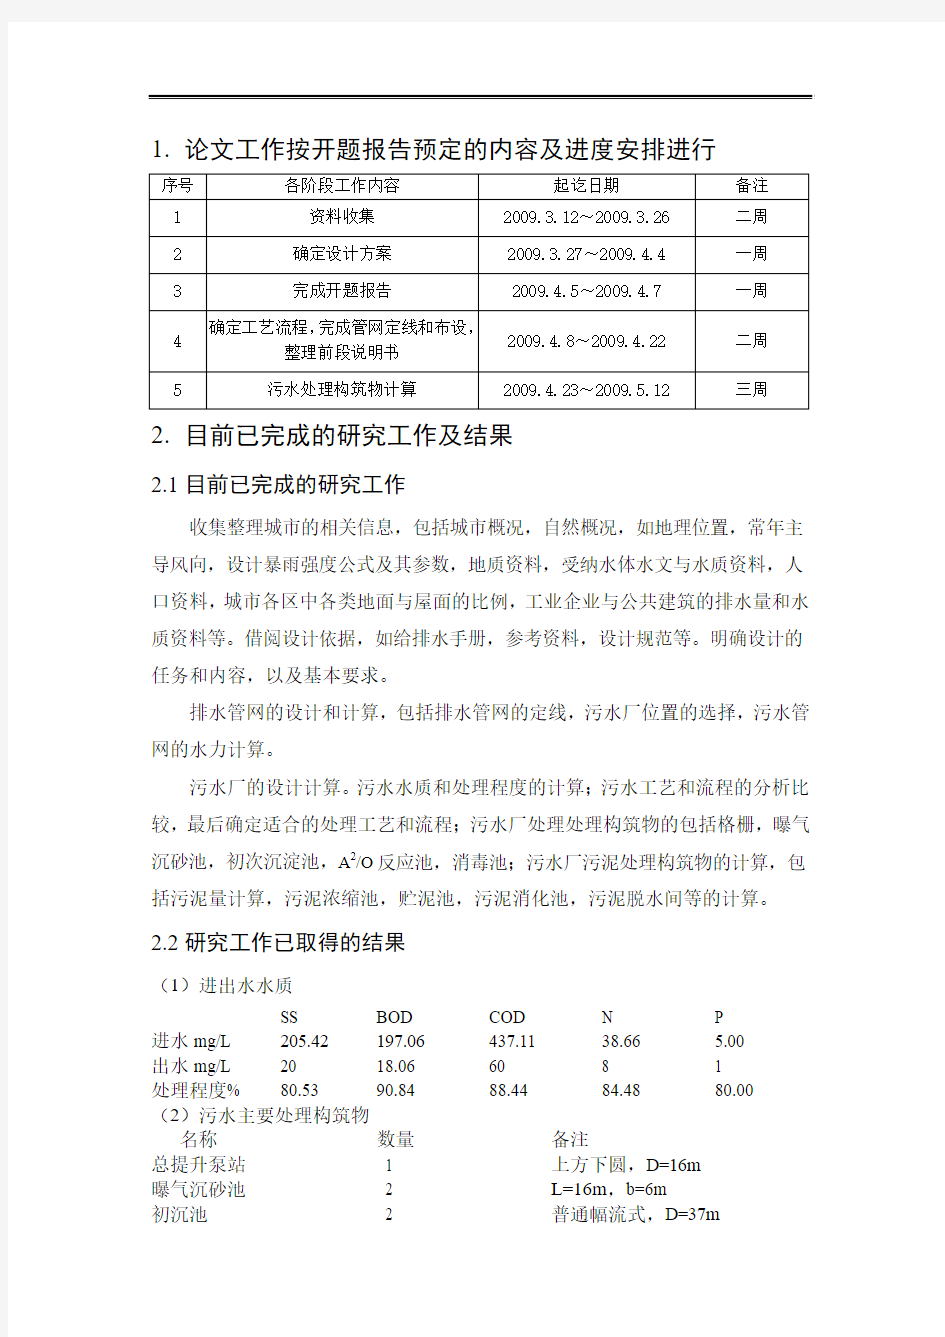 辽宁省中部地区C市排水工程设计-中期检查表